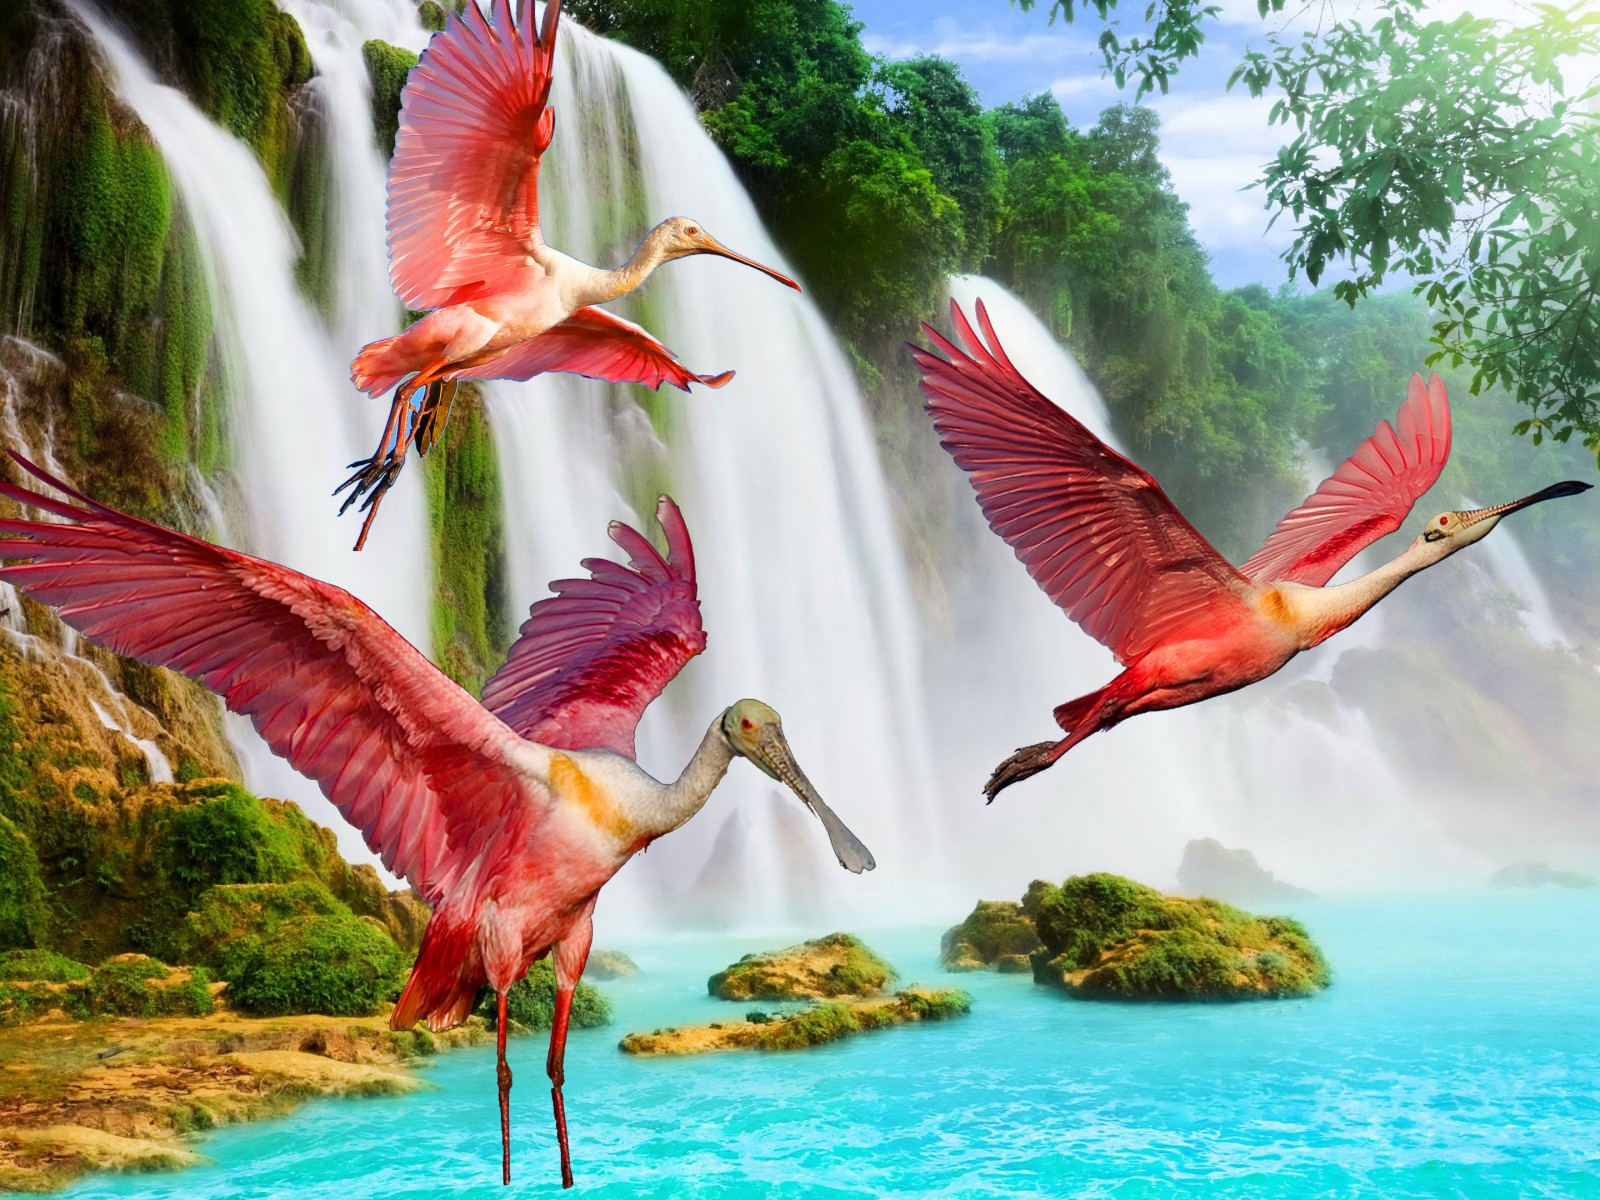 美しい画像のhd壁紙,鳥,自然,自然の風景,水鳥,野生動物